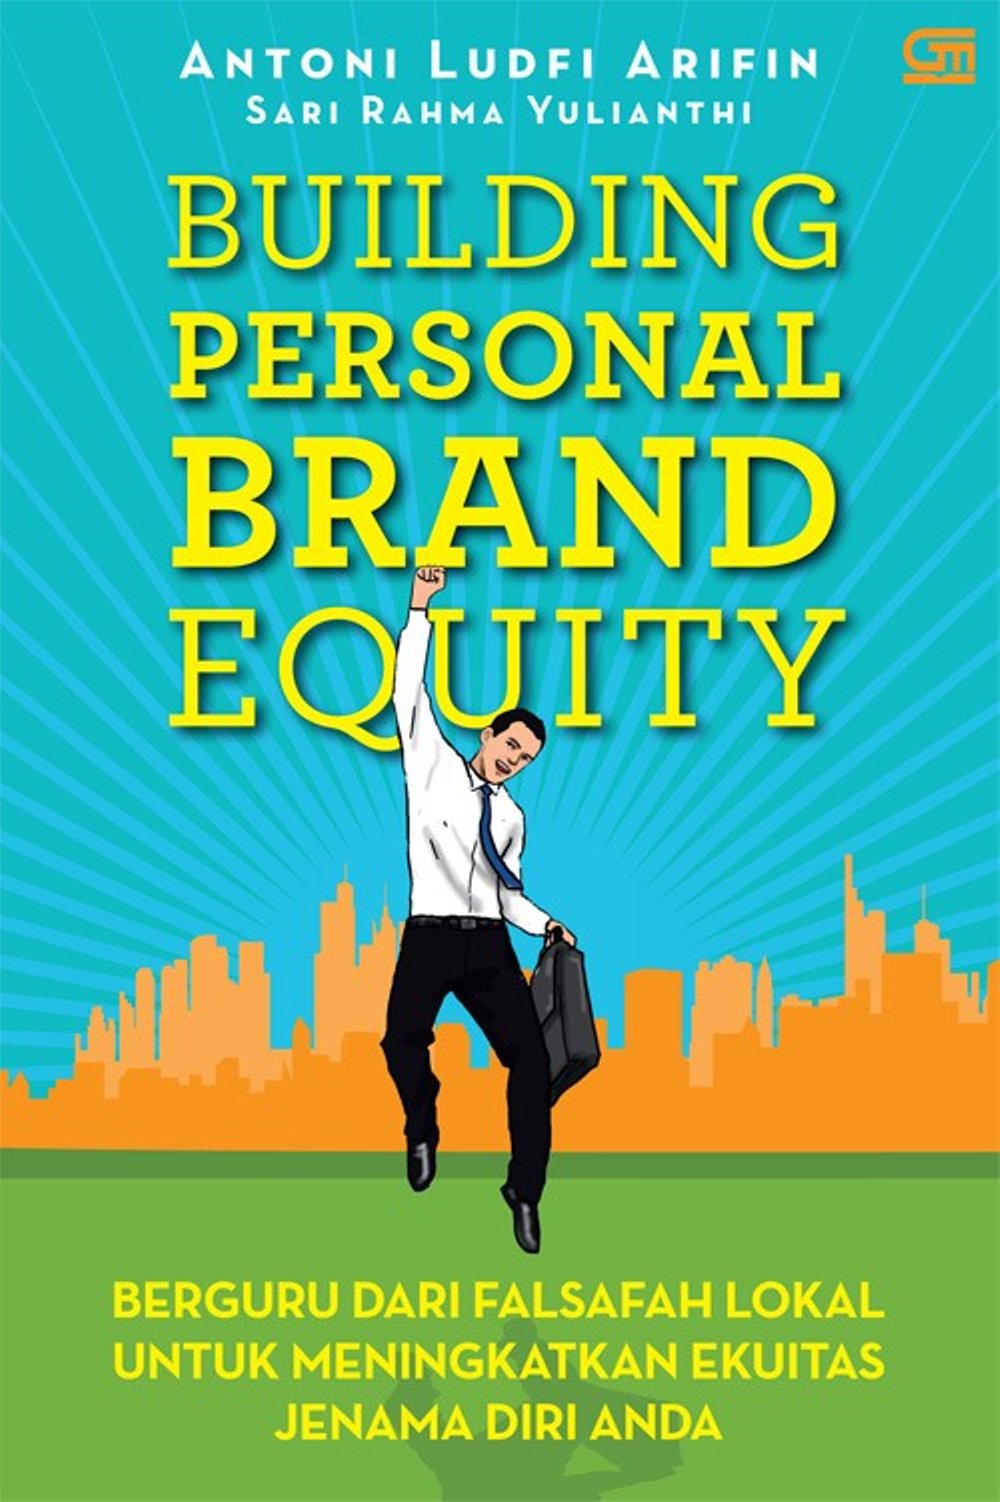 Building Personal Brand Equity :  Berguru dari falsafah lokal untuk meningkatkan ekuitas jenama diri anda